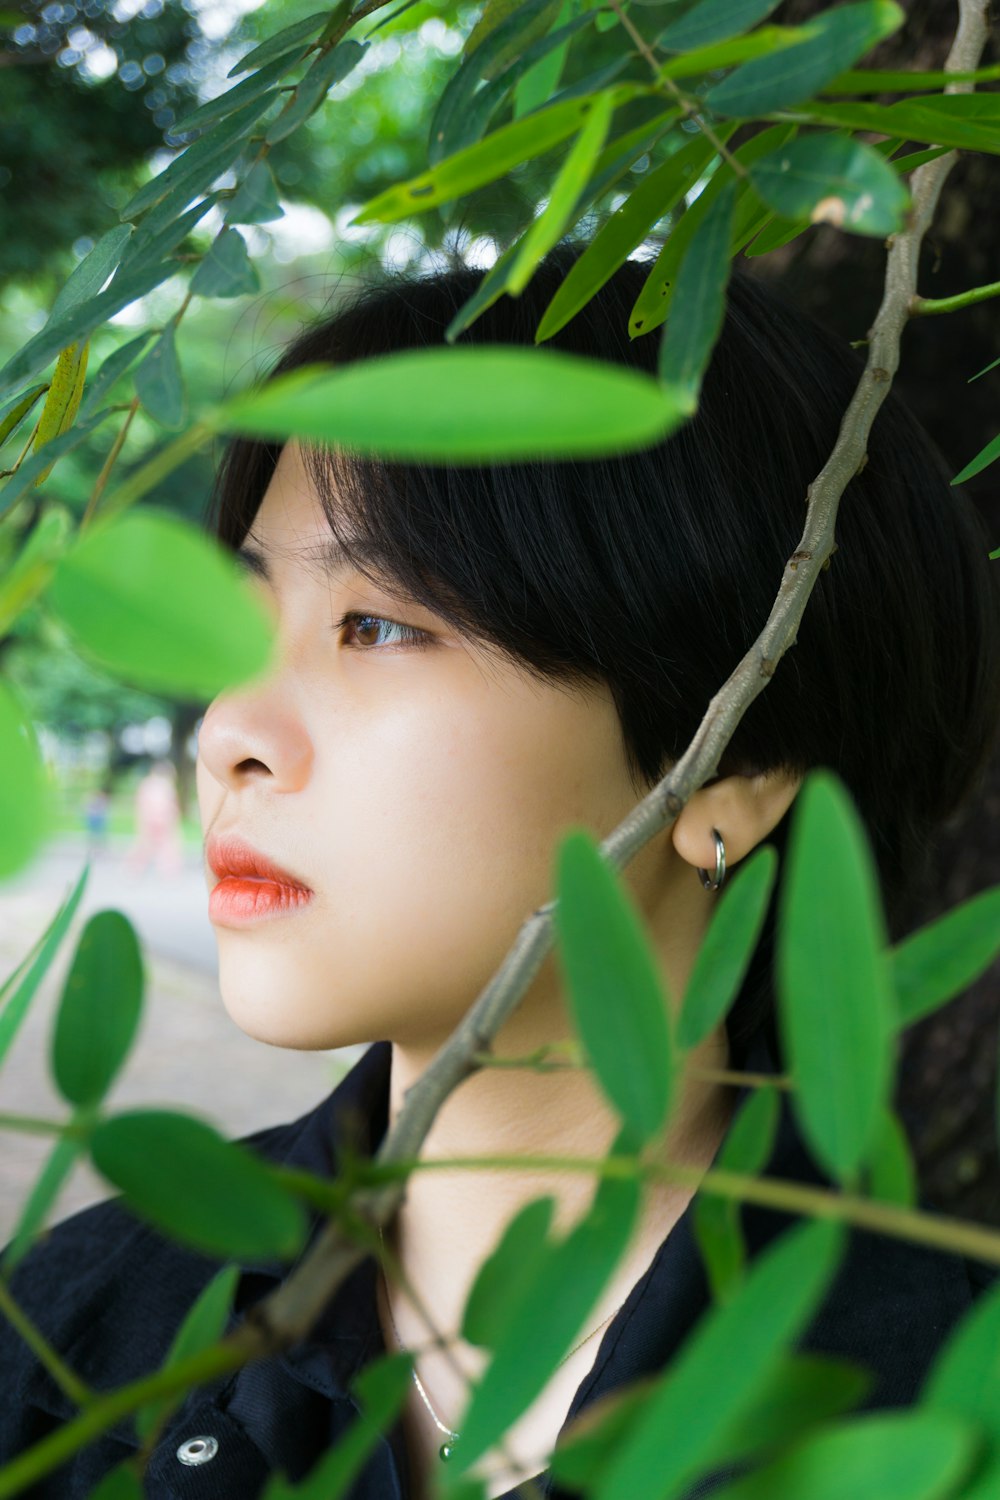 donna in rossetto rosso che si nasconde dietro le foglie verdi